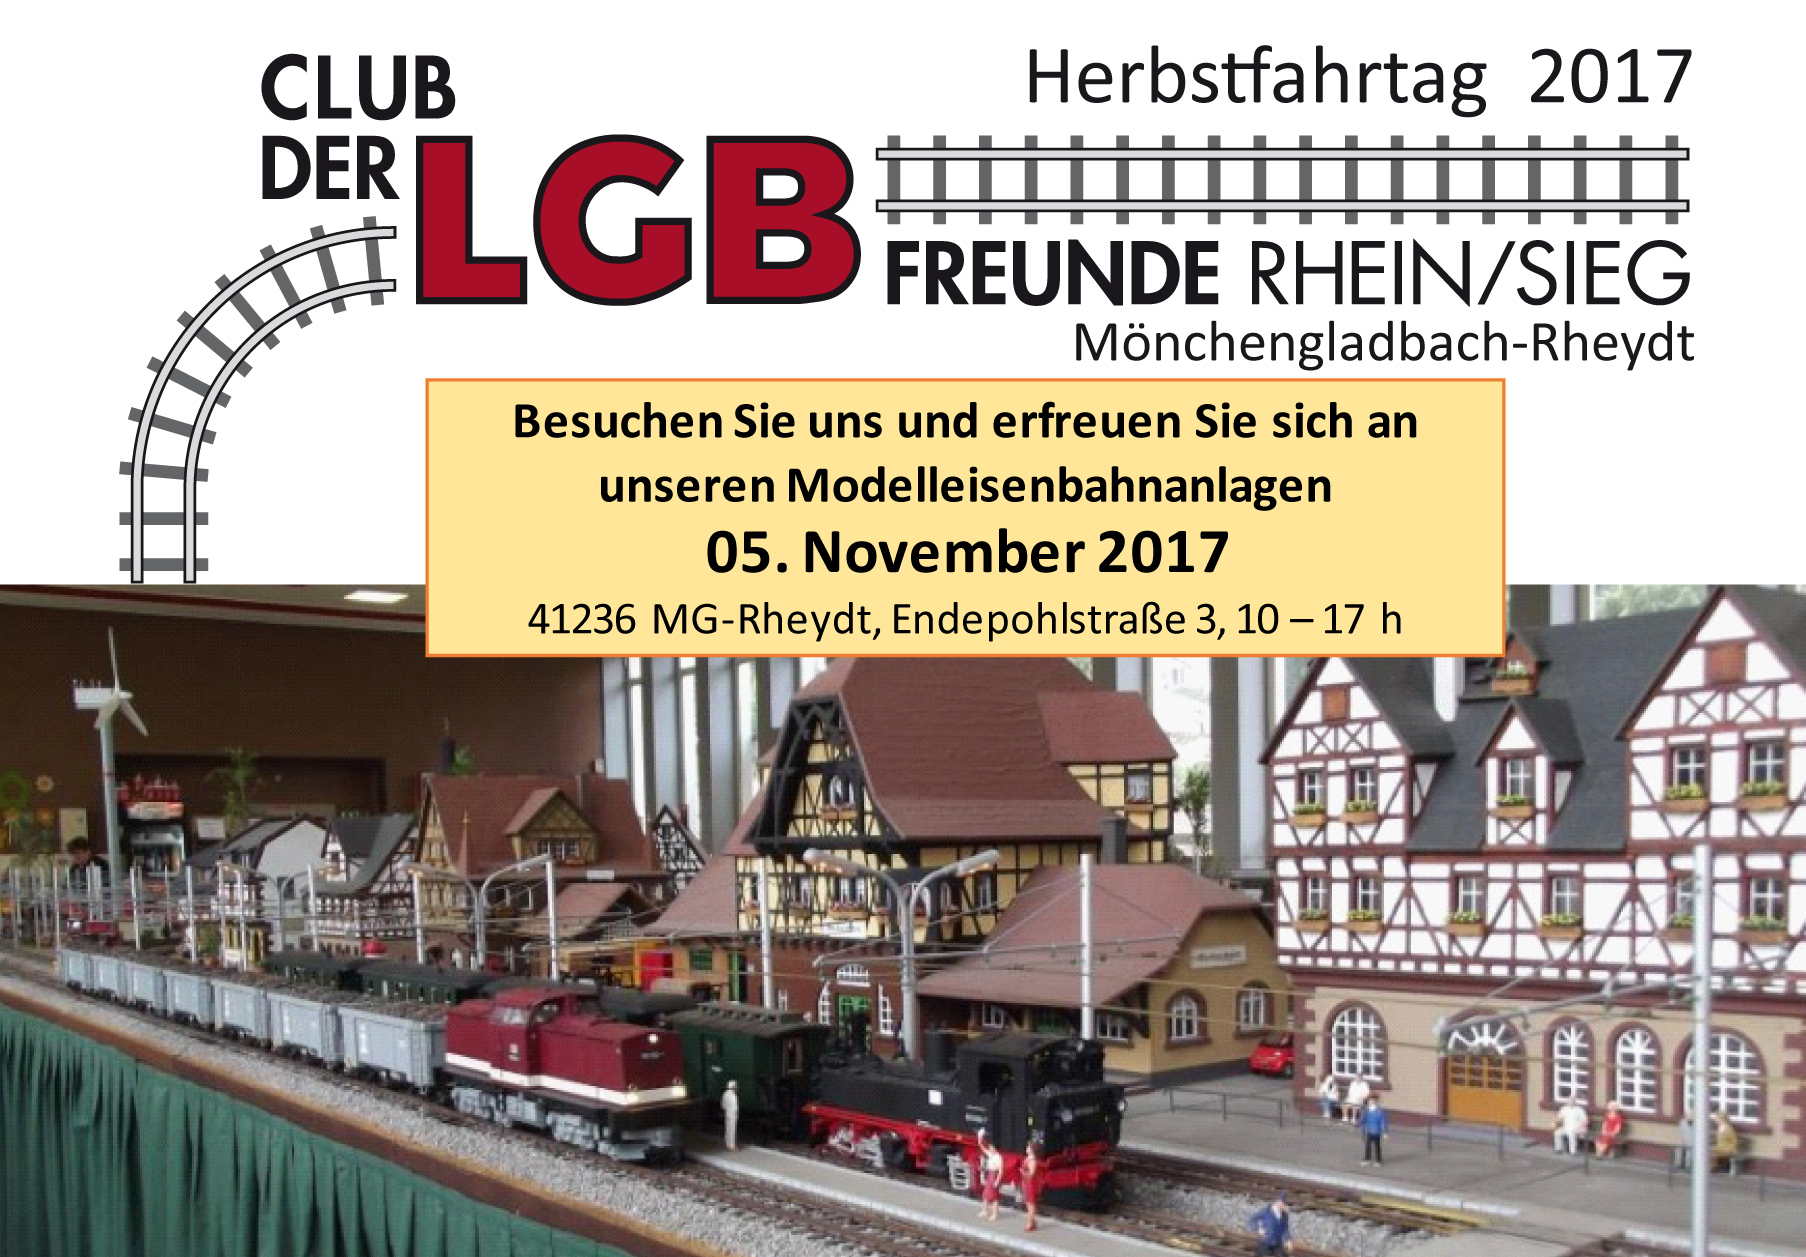 Kommen Sie zu den Herbstfahrtagen am 05. November 2017 in unser Clubdomizil nach Mönchengladbach/Rheydt